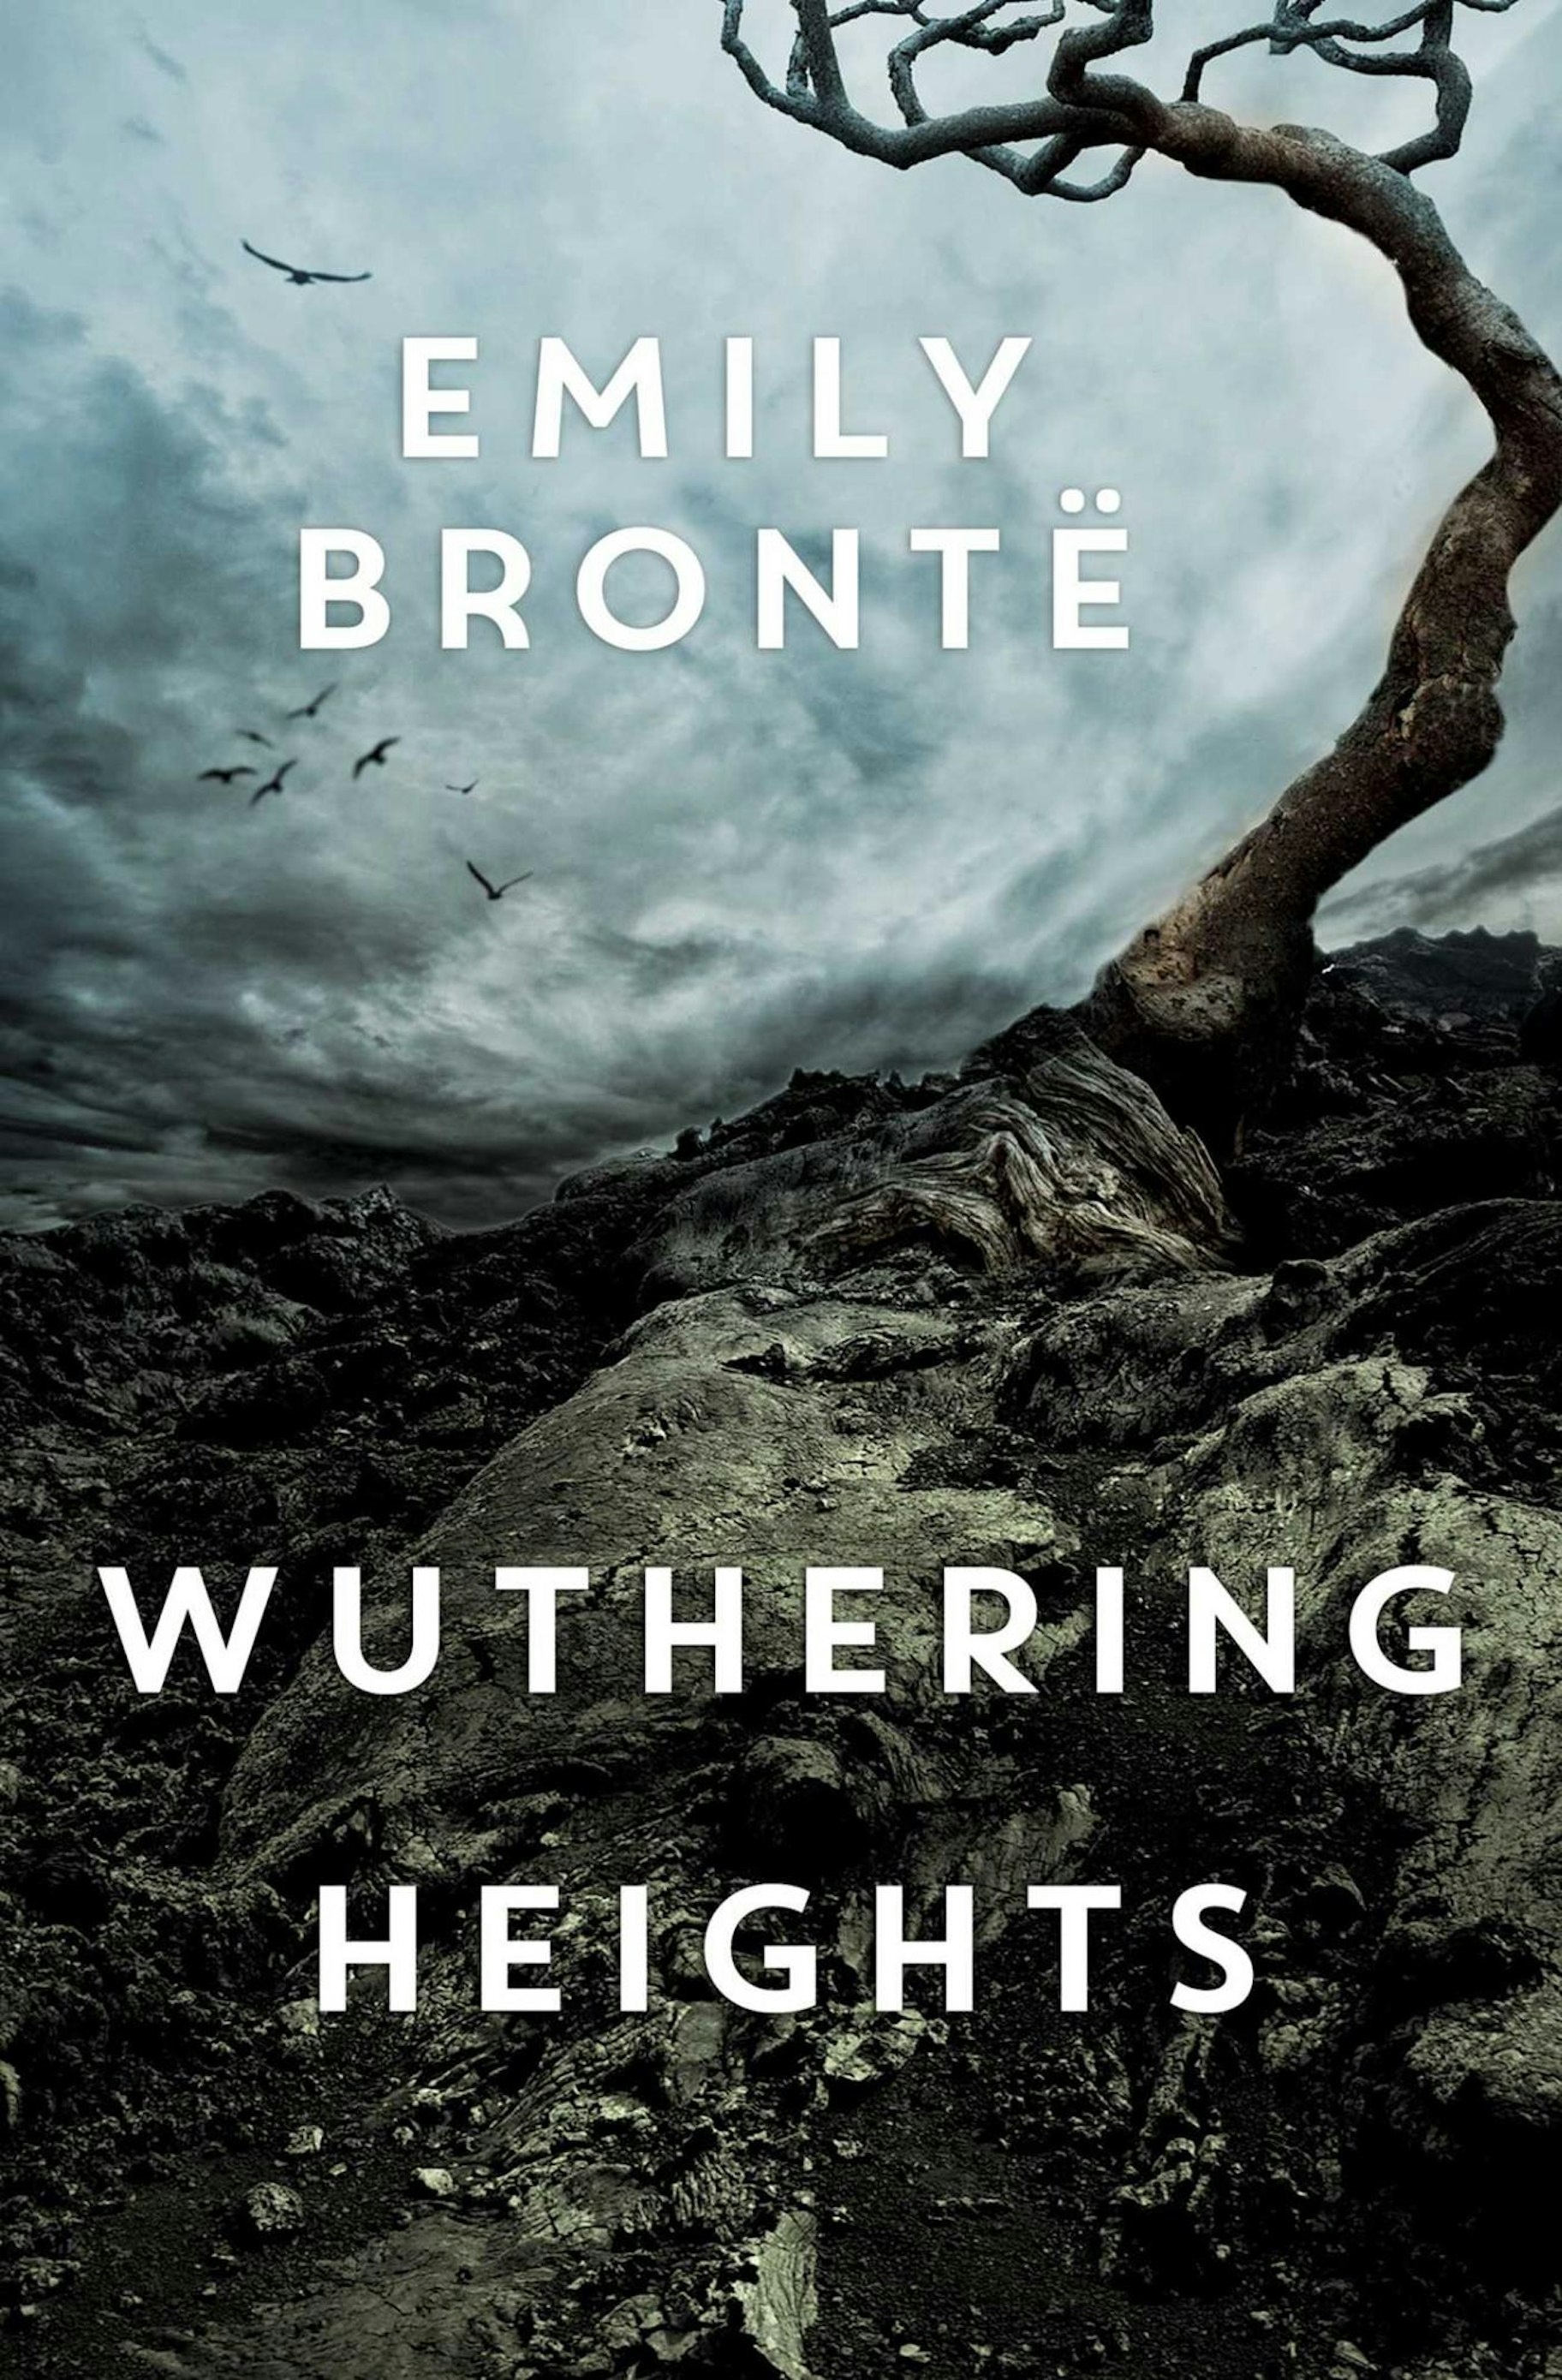 Wichrowe Wzgórza - Emily Brontë